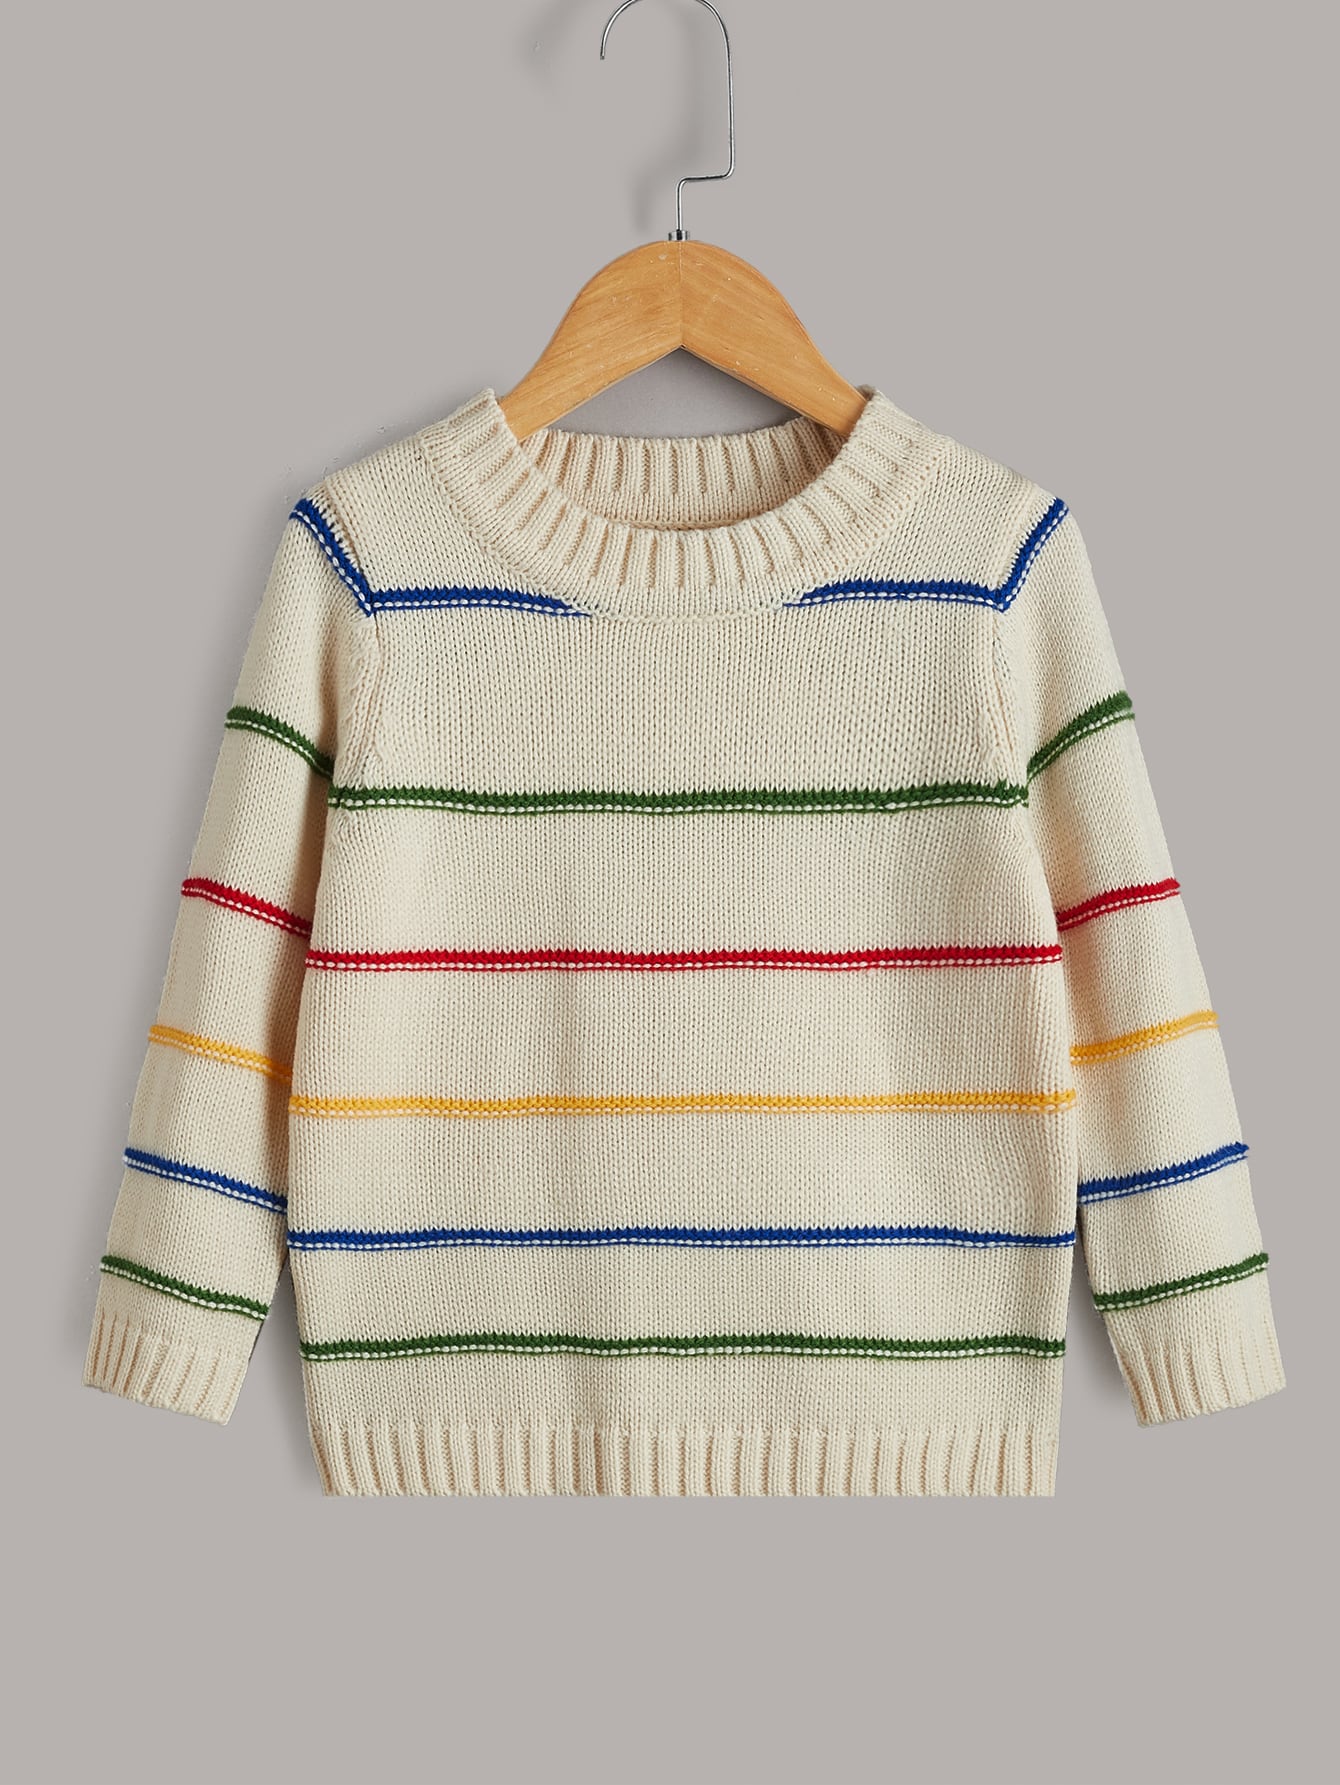 Toddler Girls Block Striped Pattern Sweater